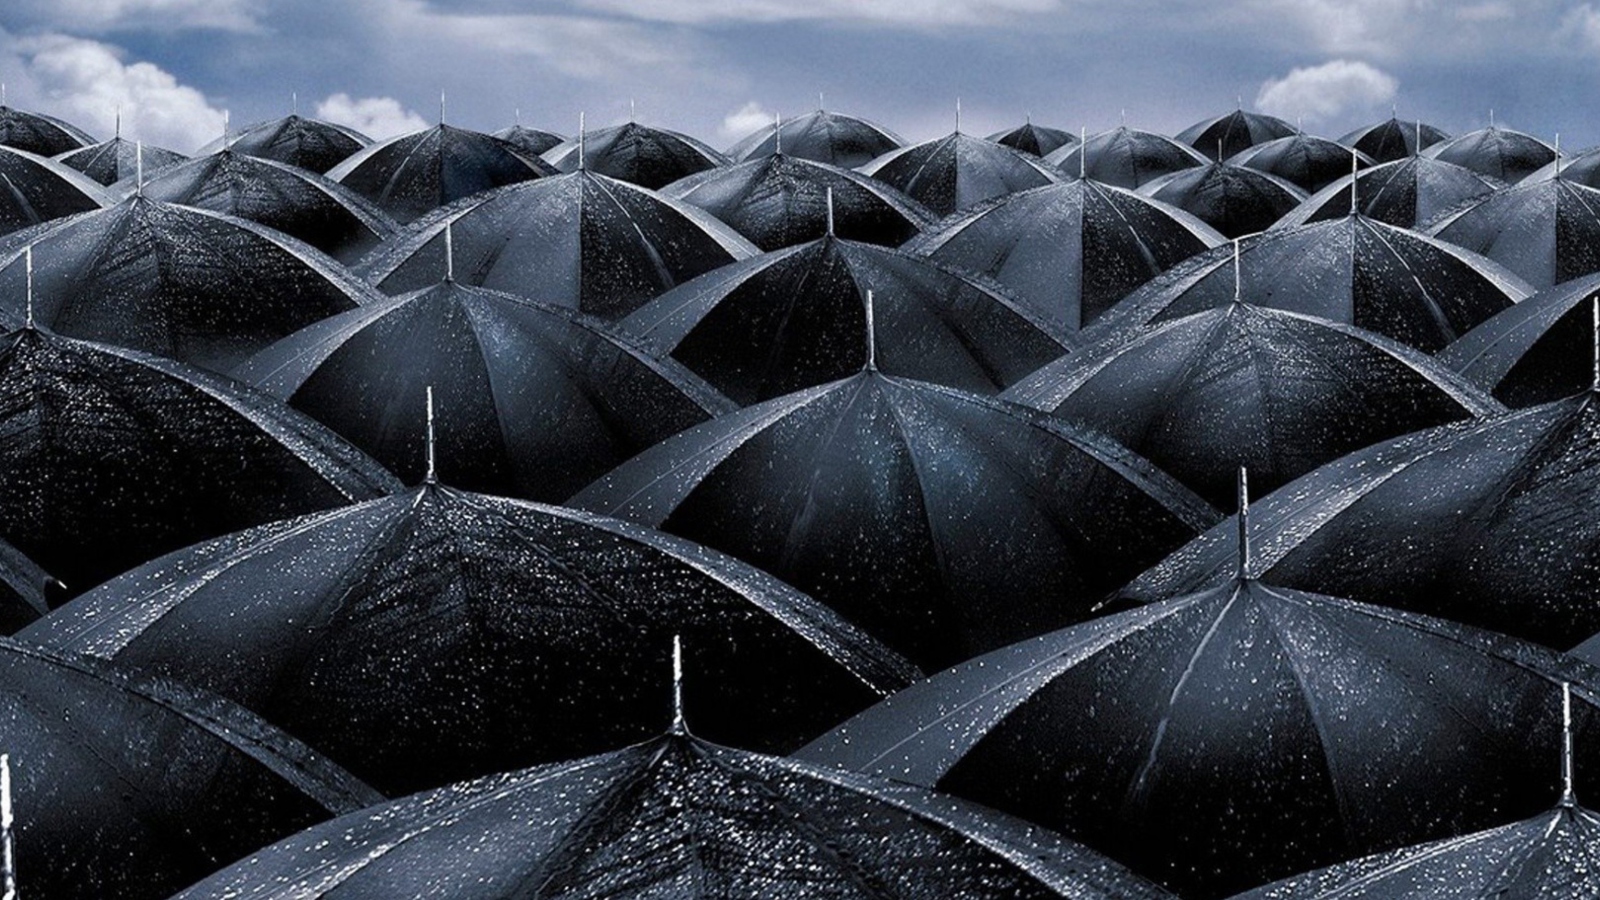 Обои Black Umbrellas 1600x900